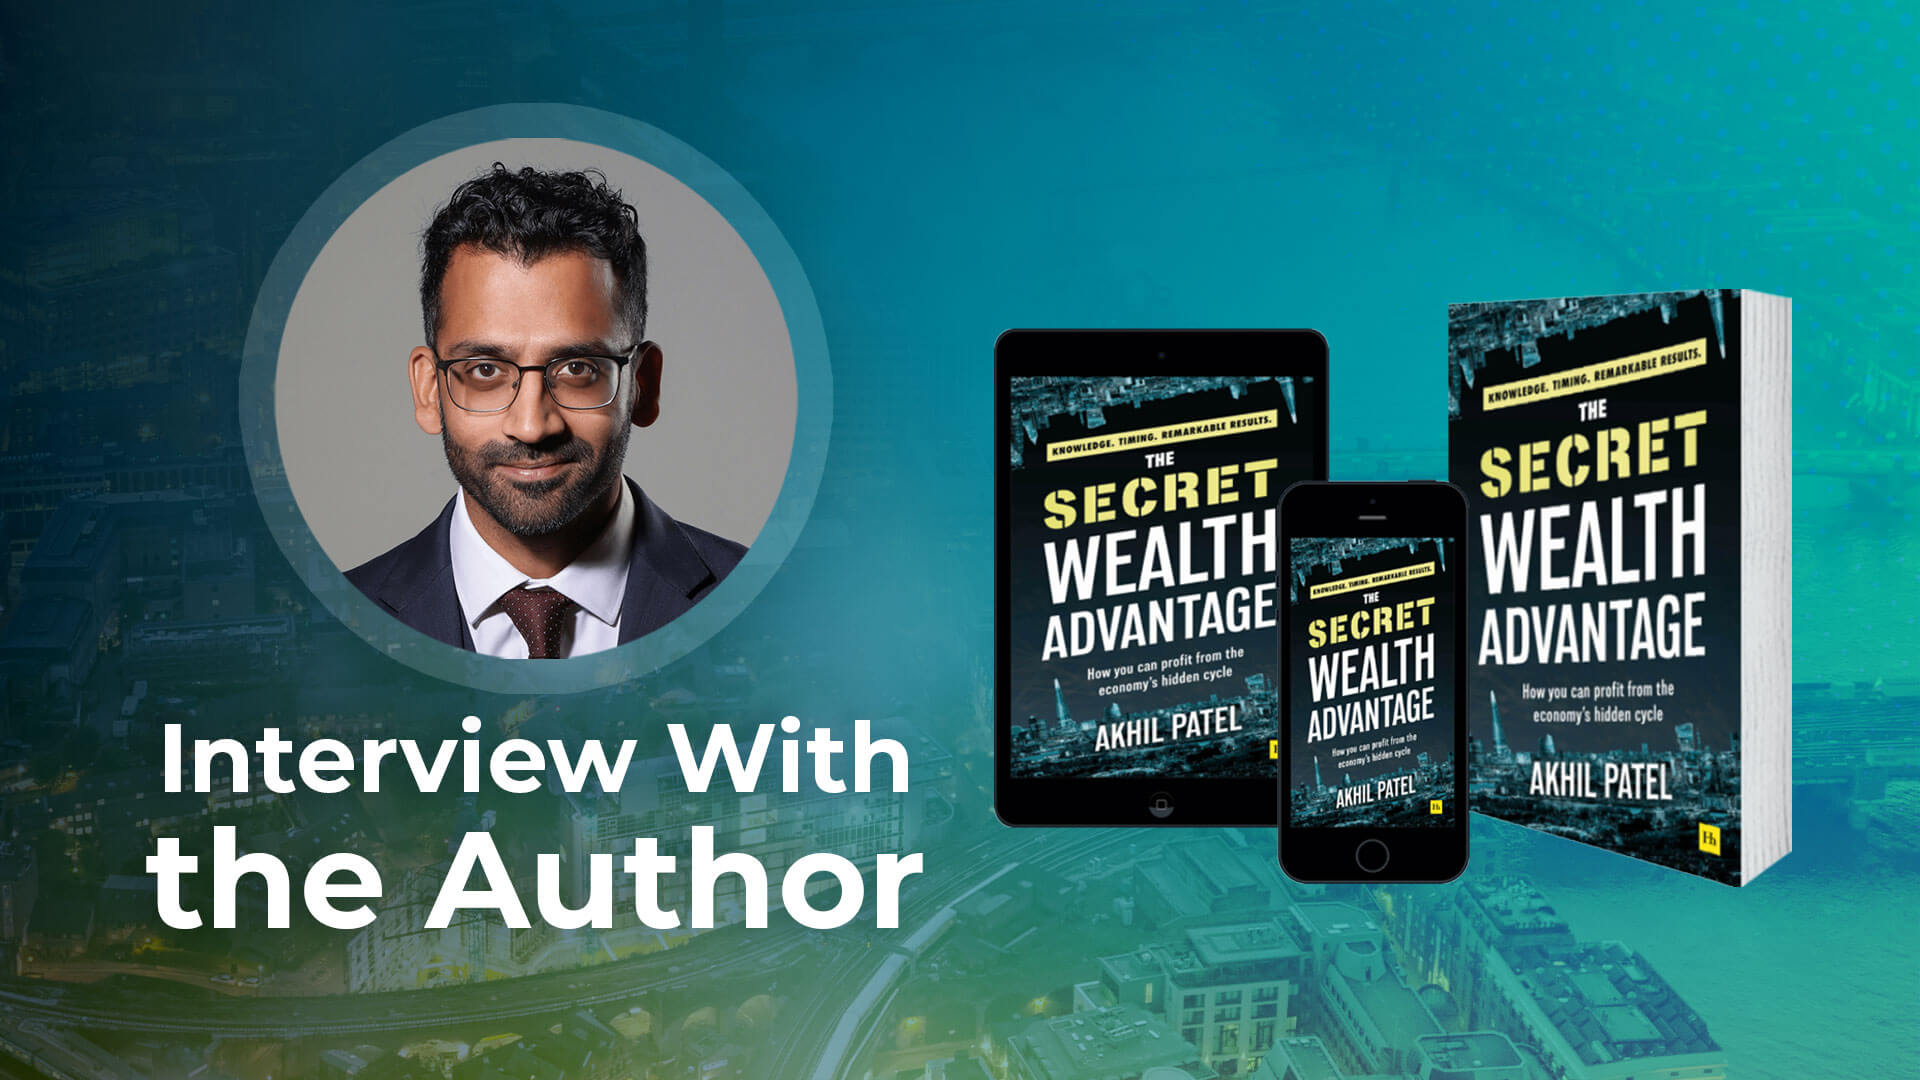 Author Interview - Akhil Patel on The Secret Wealth Advantage